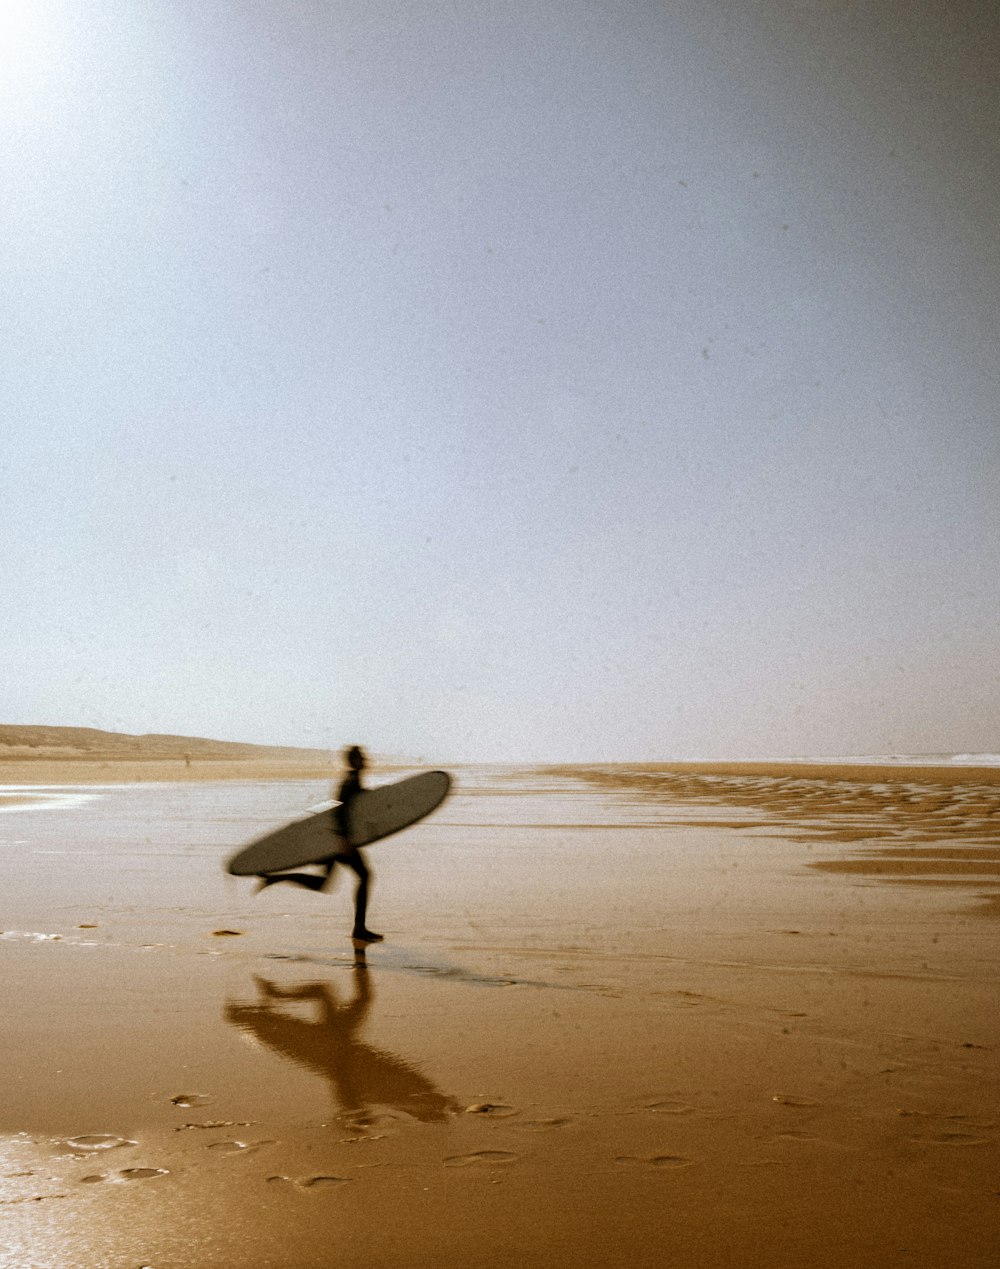 Una persona con una tavola da surf che cammina su una spiaggia